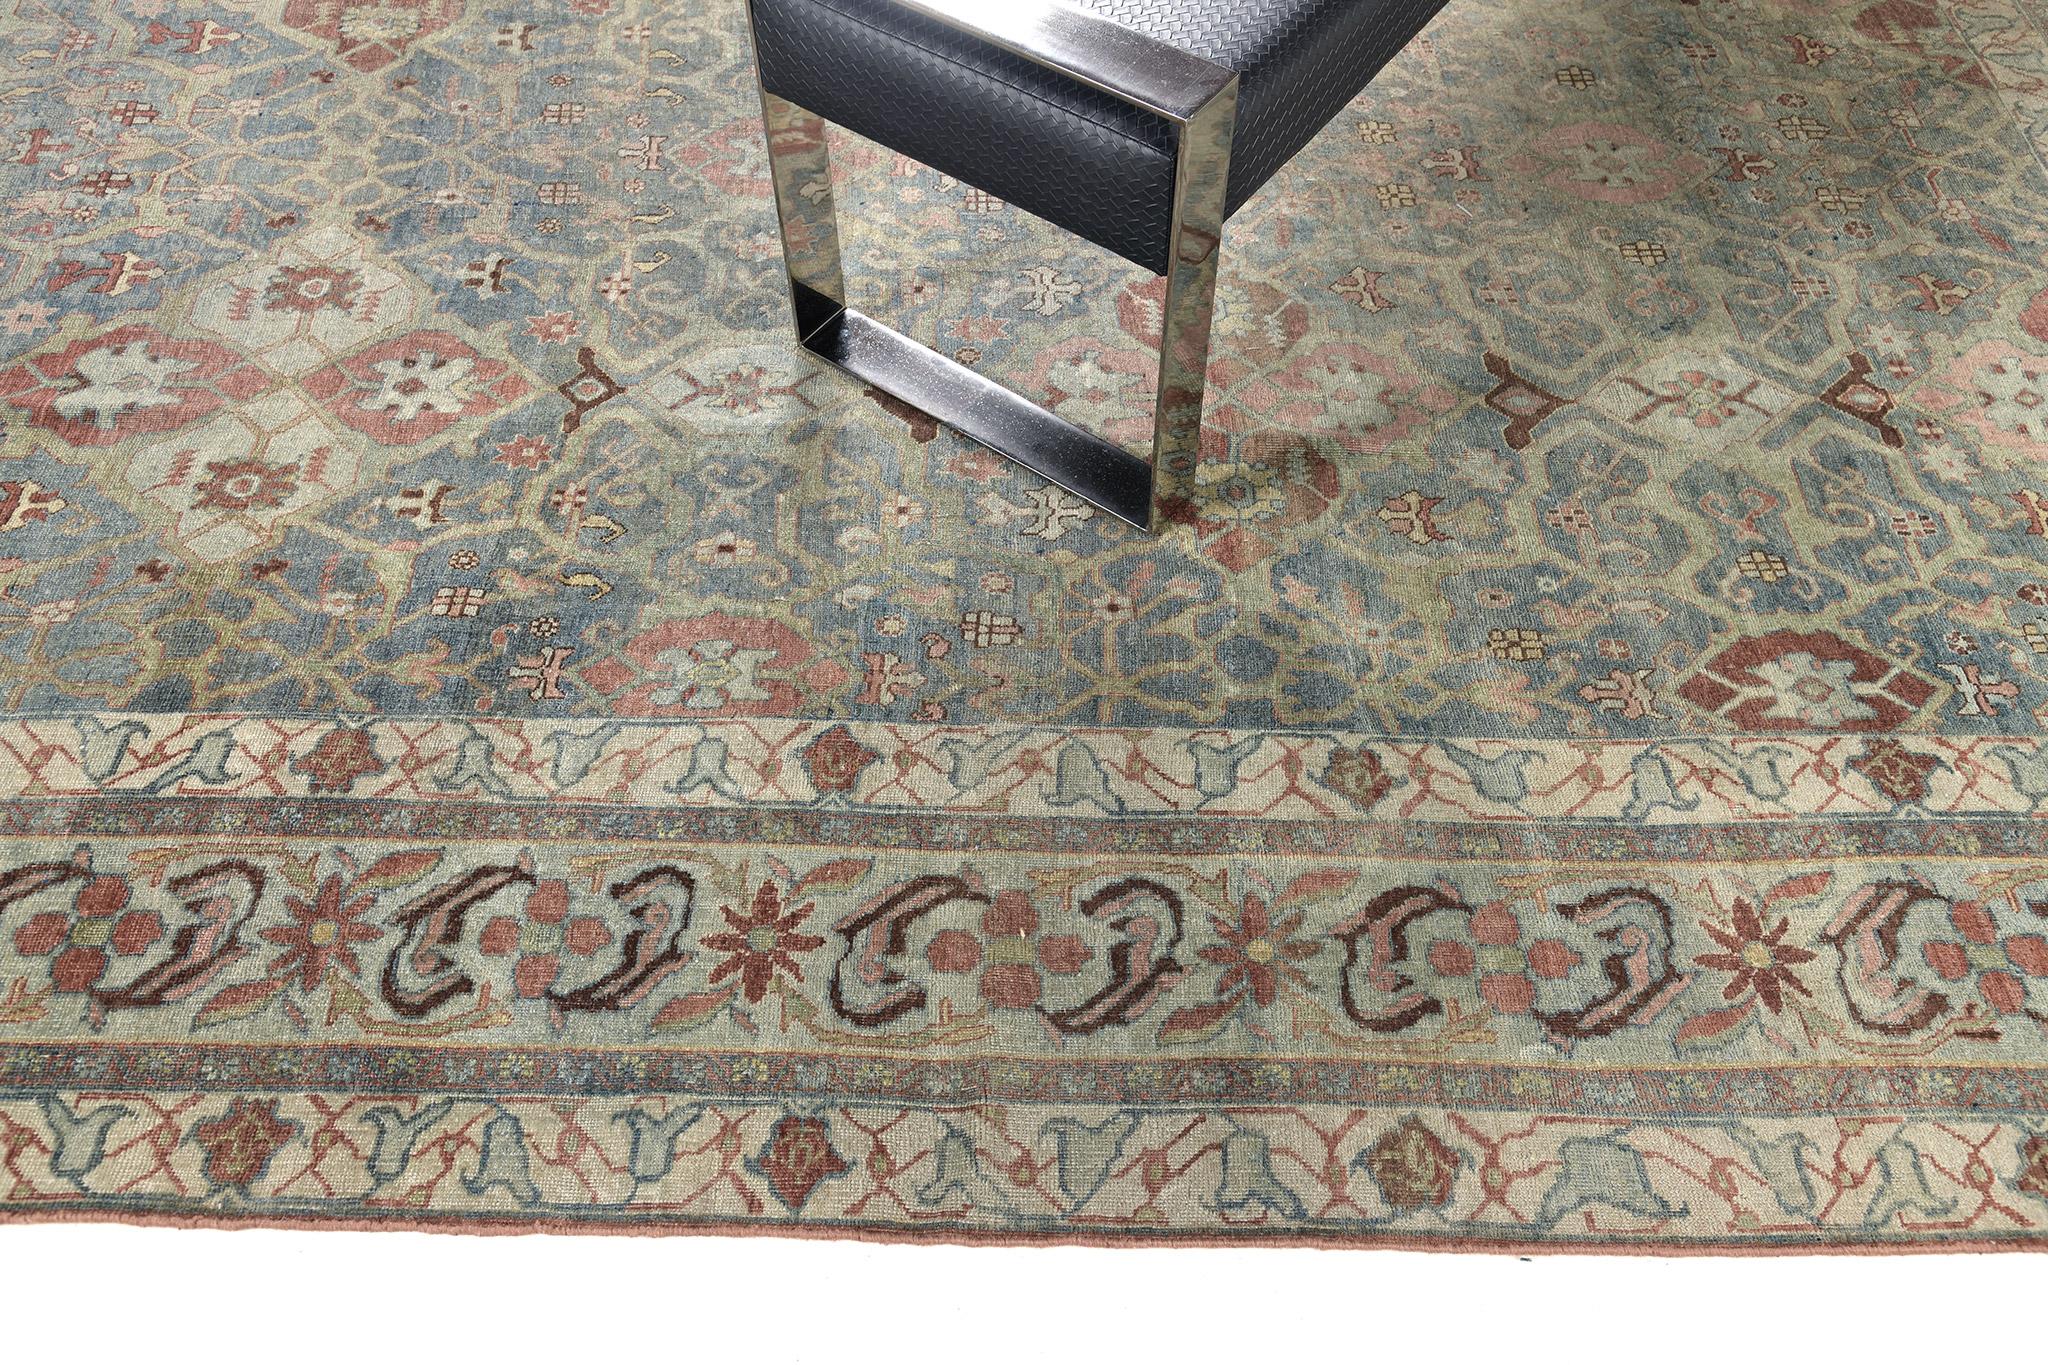 Ein anmutiger antiker persischer Bidjar-Teppich mit einer Reihe von Herati-Mustern, die aus verschiedenen botanischen Elementen in den prächtigen Tönen von Ceruleanblau, Rost, Elfenbein und Salbeigrün bestehen. Dieser bezaubernde Teppich wirkt mit